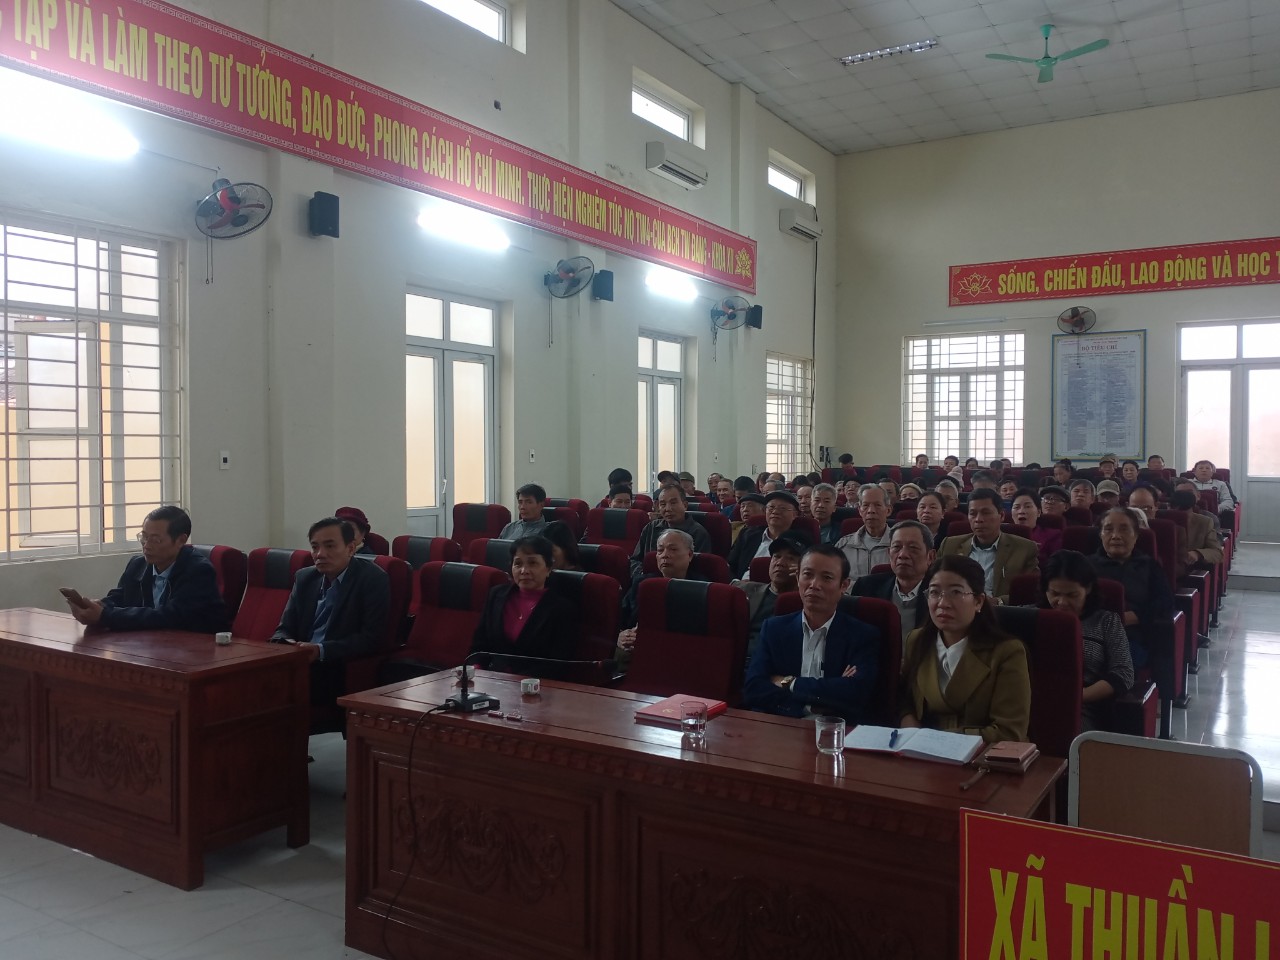 Đảng Bộ xã Thuần Lộc tổ chức hội nghị quán triệt, học tập, nghiên cứu, triển khai thực hiện nghị quyết lần thứ tám. Ban chấp hành trương Đảng khóa XIII